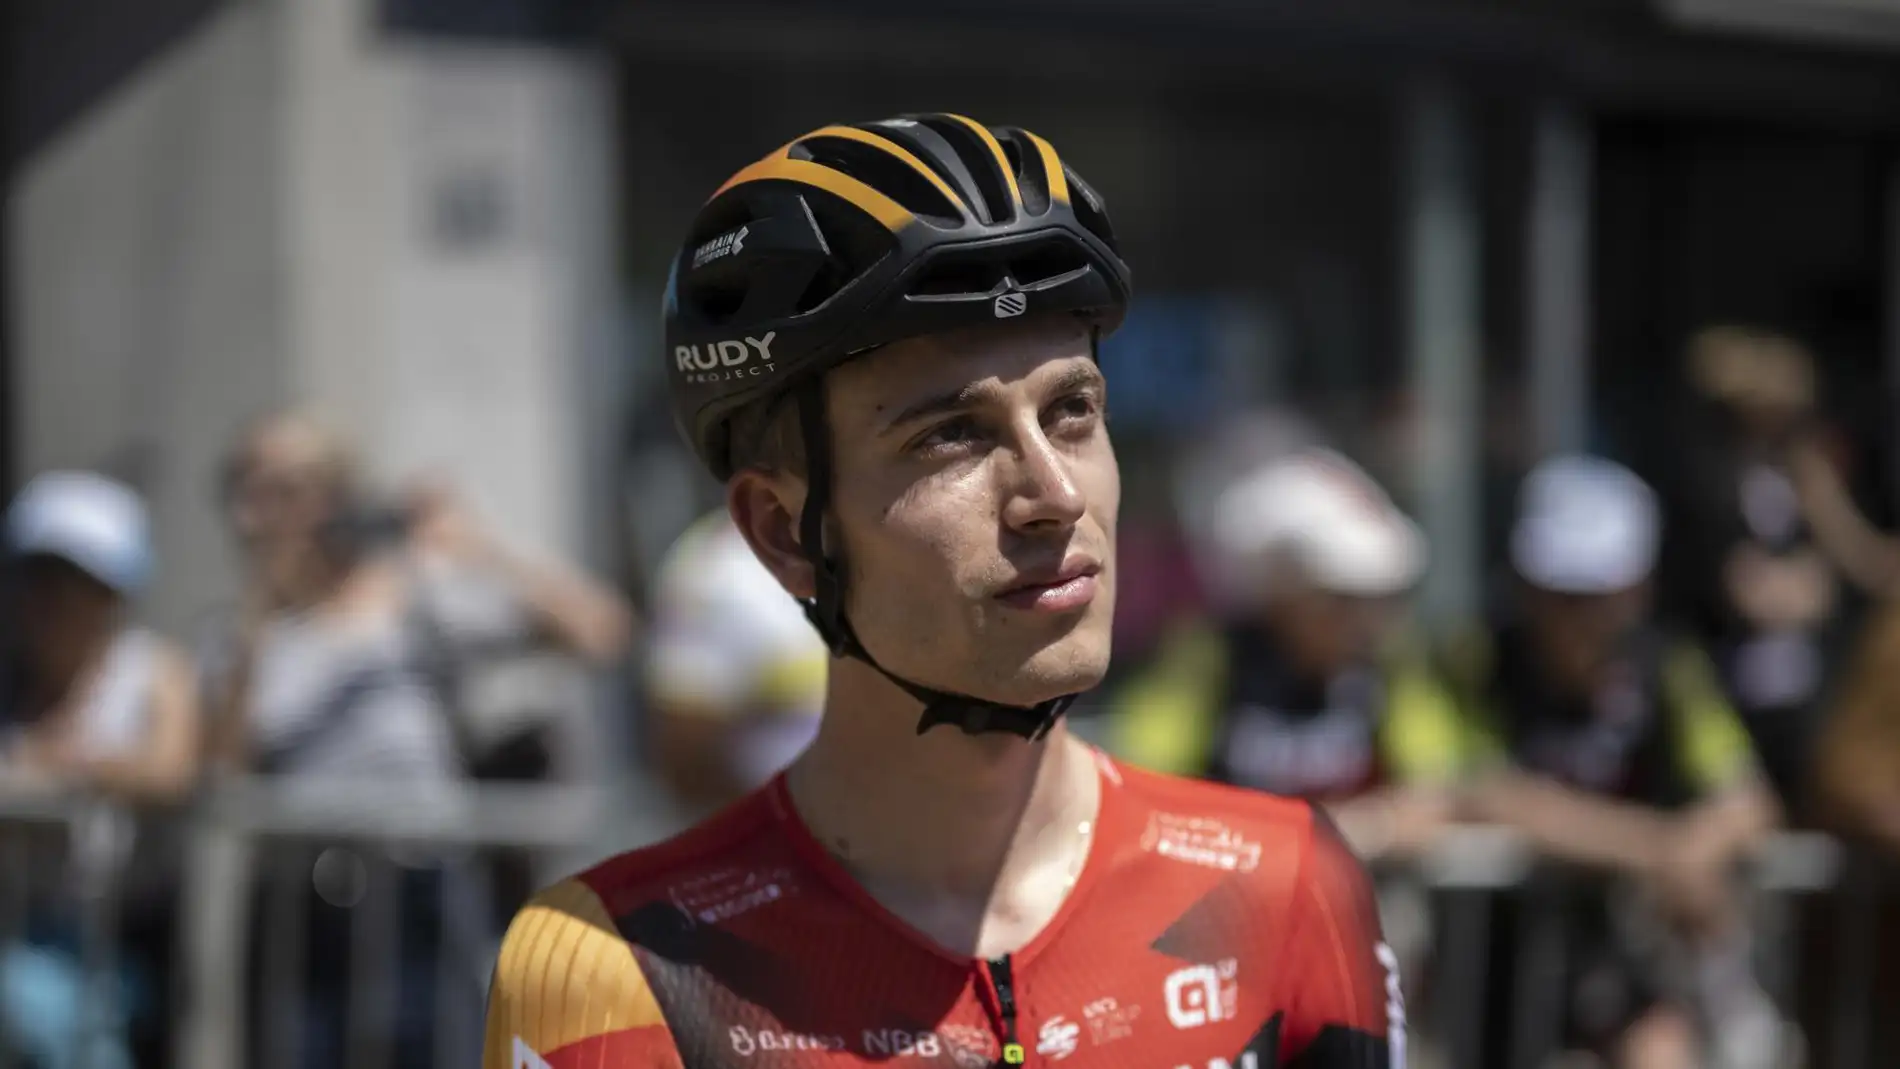 El ciclista fallecido en el Tour de Suiza Gino Mäder